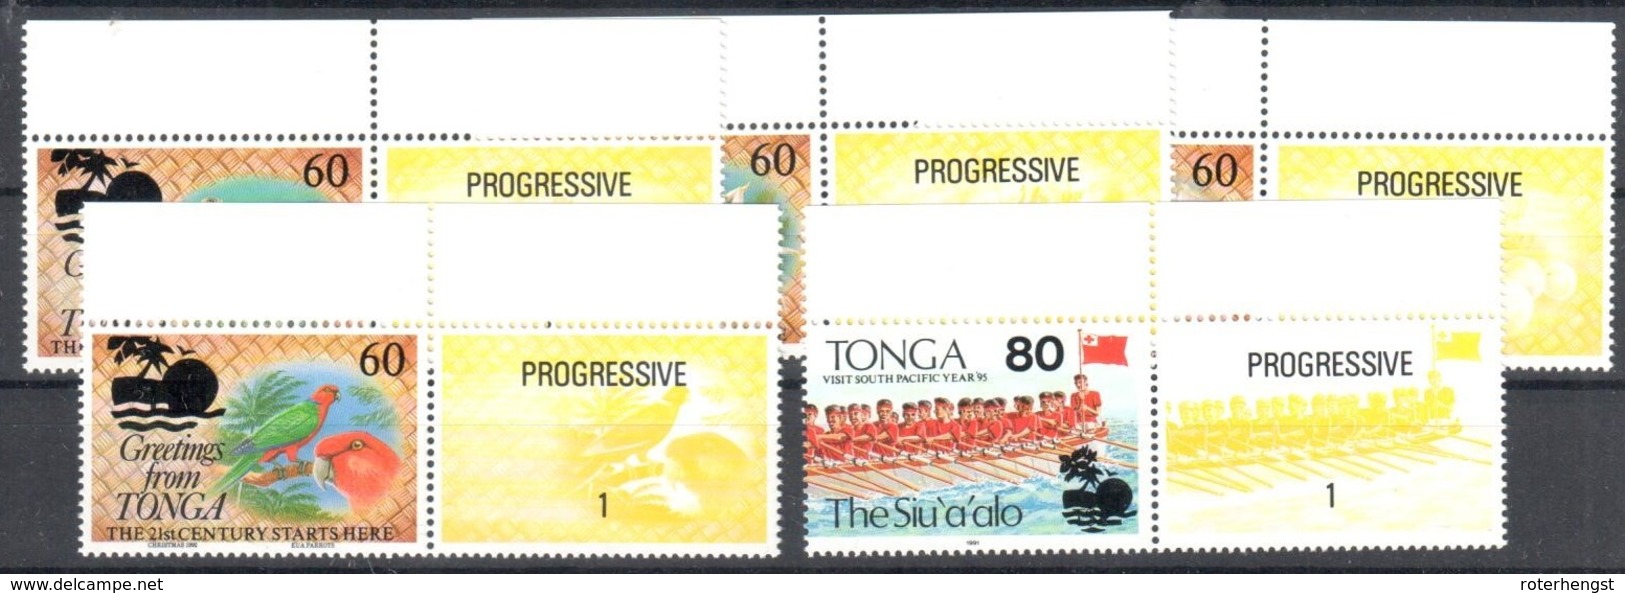 Tonga 5 Stamps Mnh ** 1995 10 Euros+++ Progressive Vignette - Tonga (1970-...)